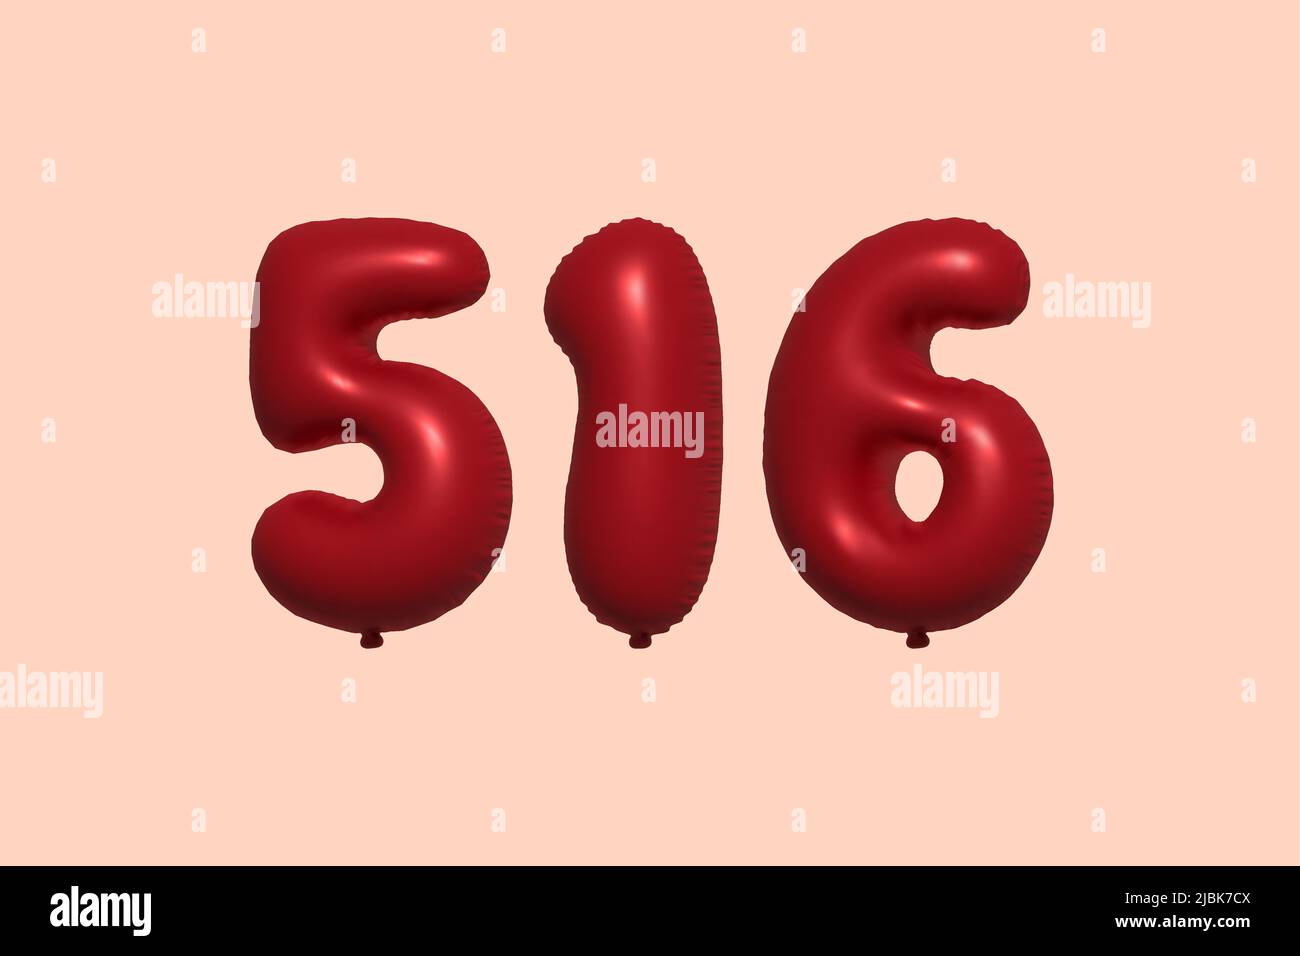 ballon à 516 3d chiffres en ballon d'air métallique réaliste rendu 3d. 3D ballons rouges à l'hélium à vendre décoration Fête anniversaire, célébration anniversaire, mariage vacances. Illustration vectorielle Illustration de Vecteur